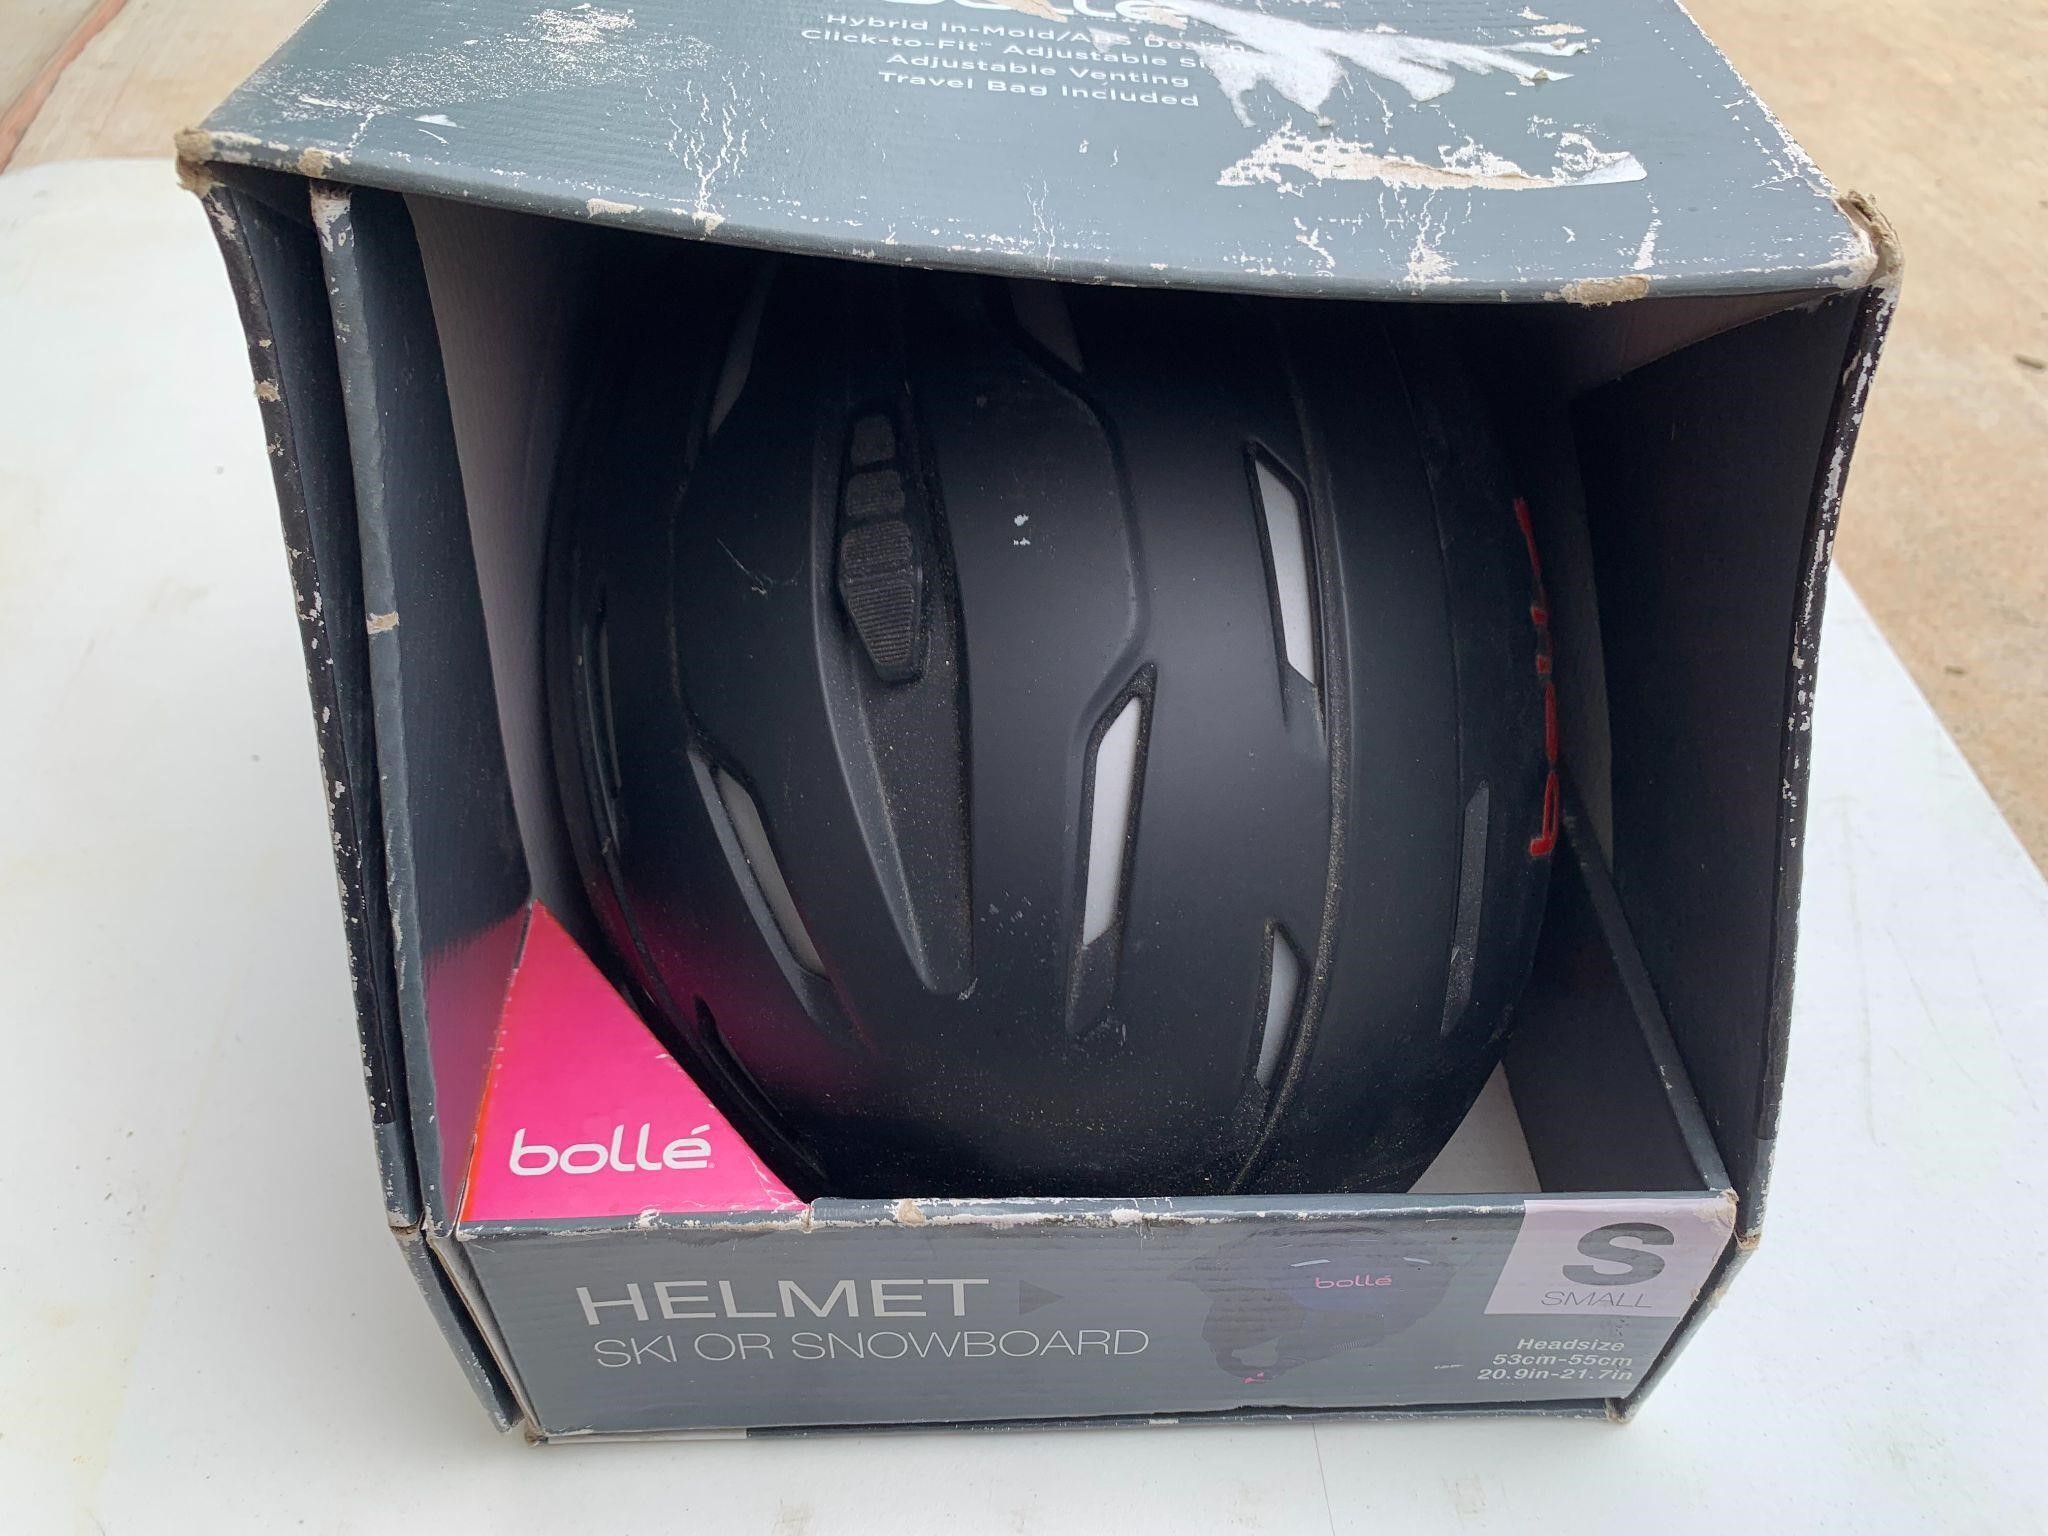 Bolle Helmet in Box